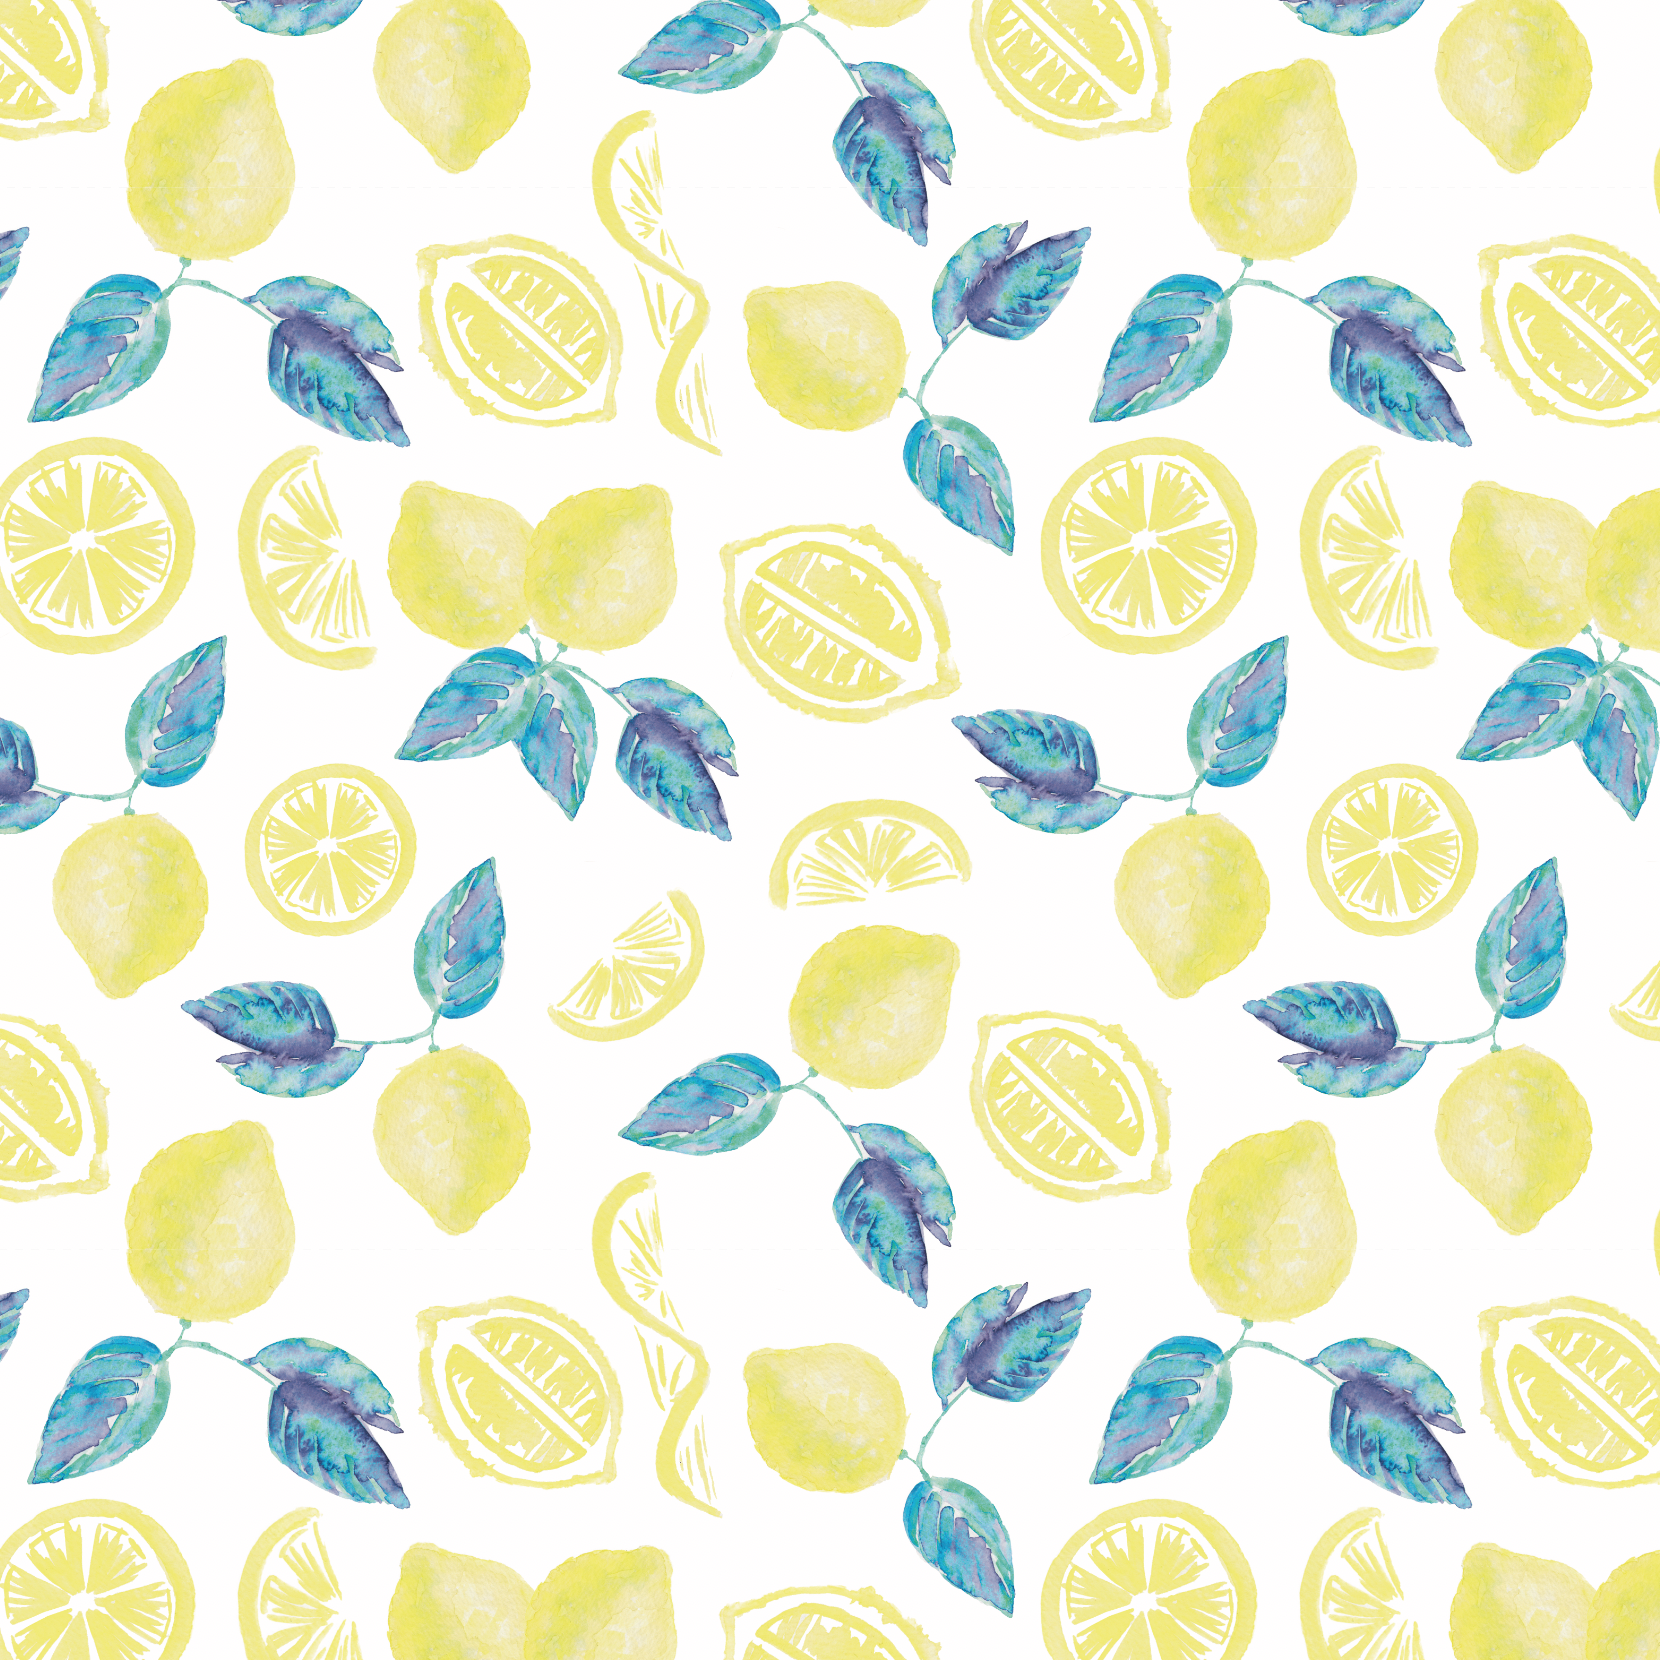 pattern-food-citrus-lemon-yellow:teal-lg inkanotes